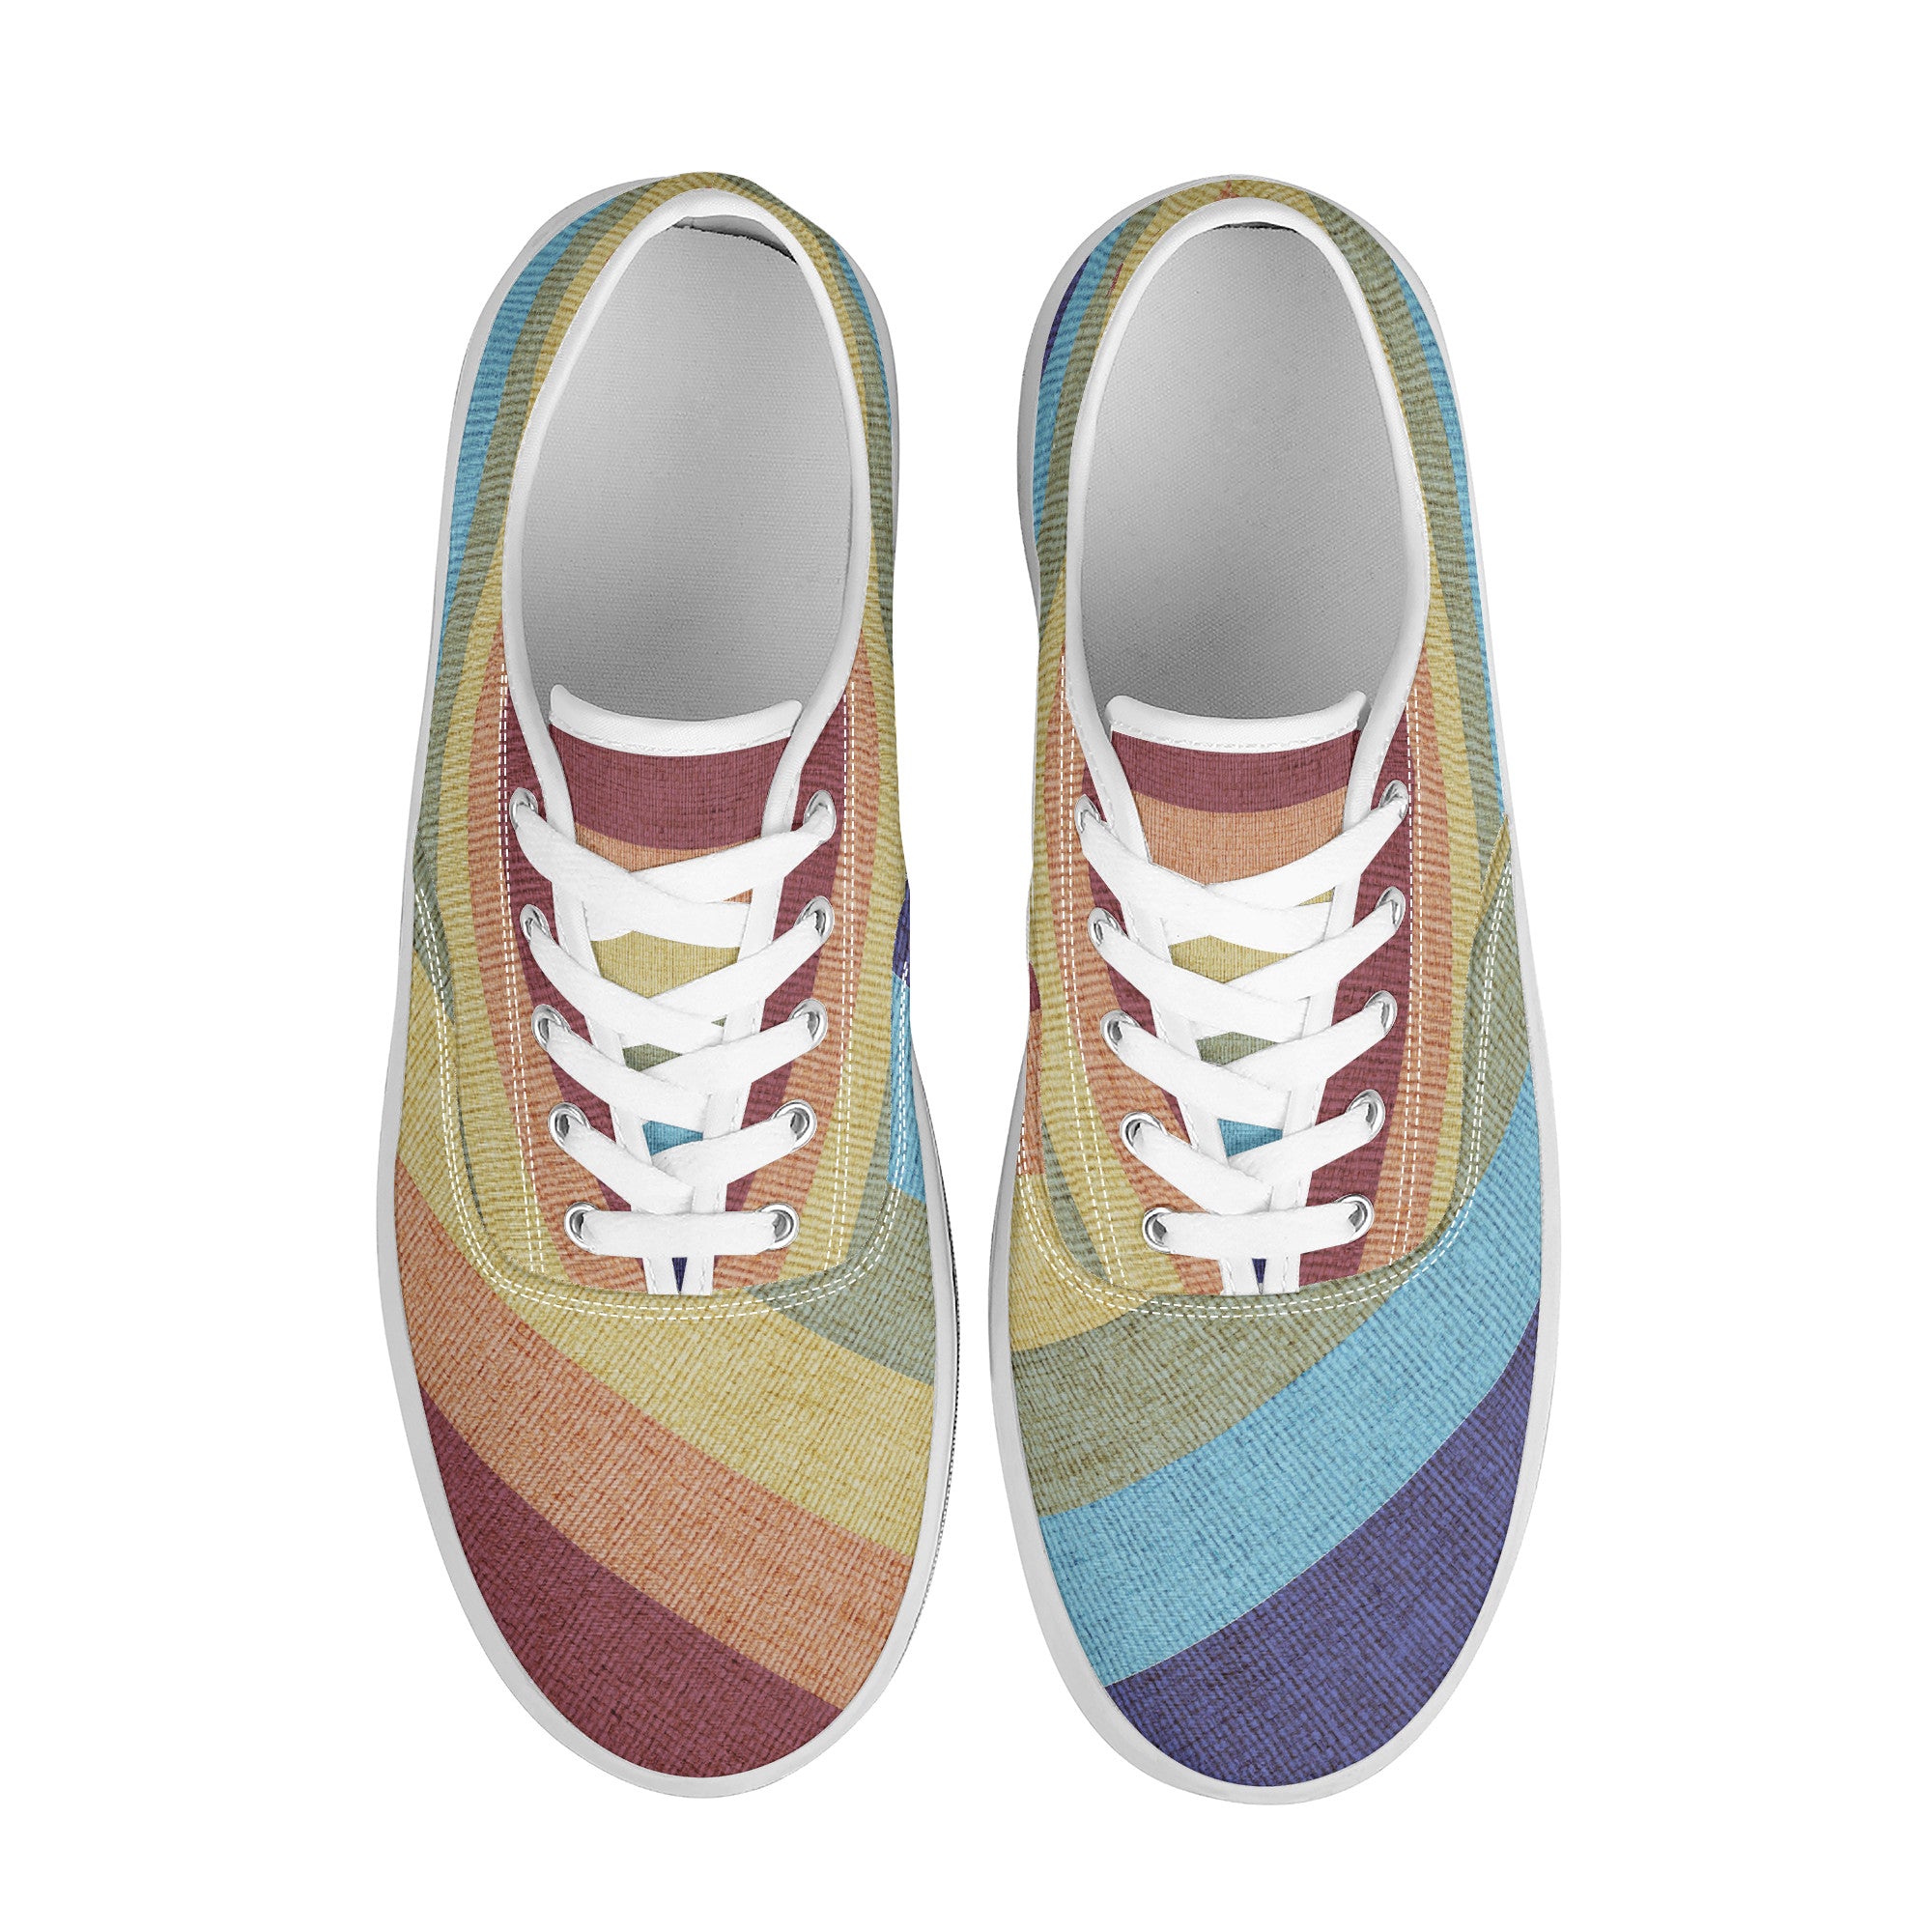 Cool shoes by Gayla Fox | Low Top Customized | Shoe Zero